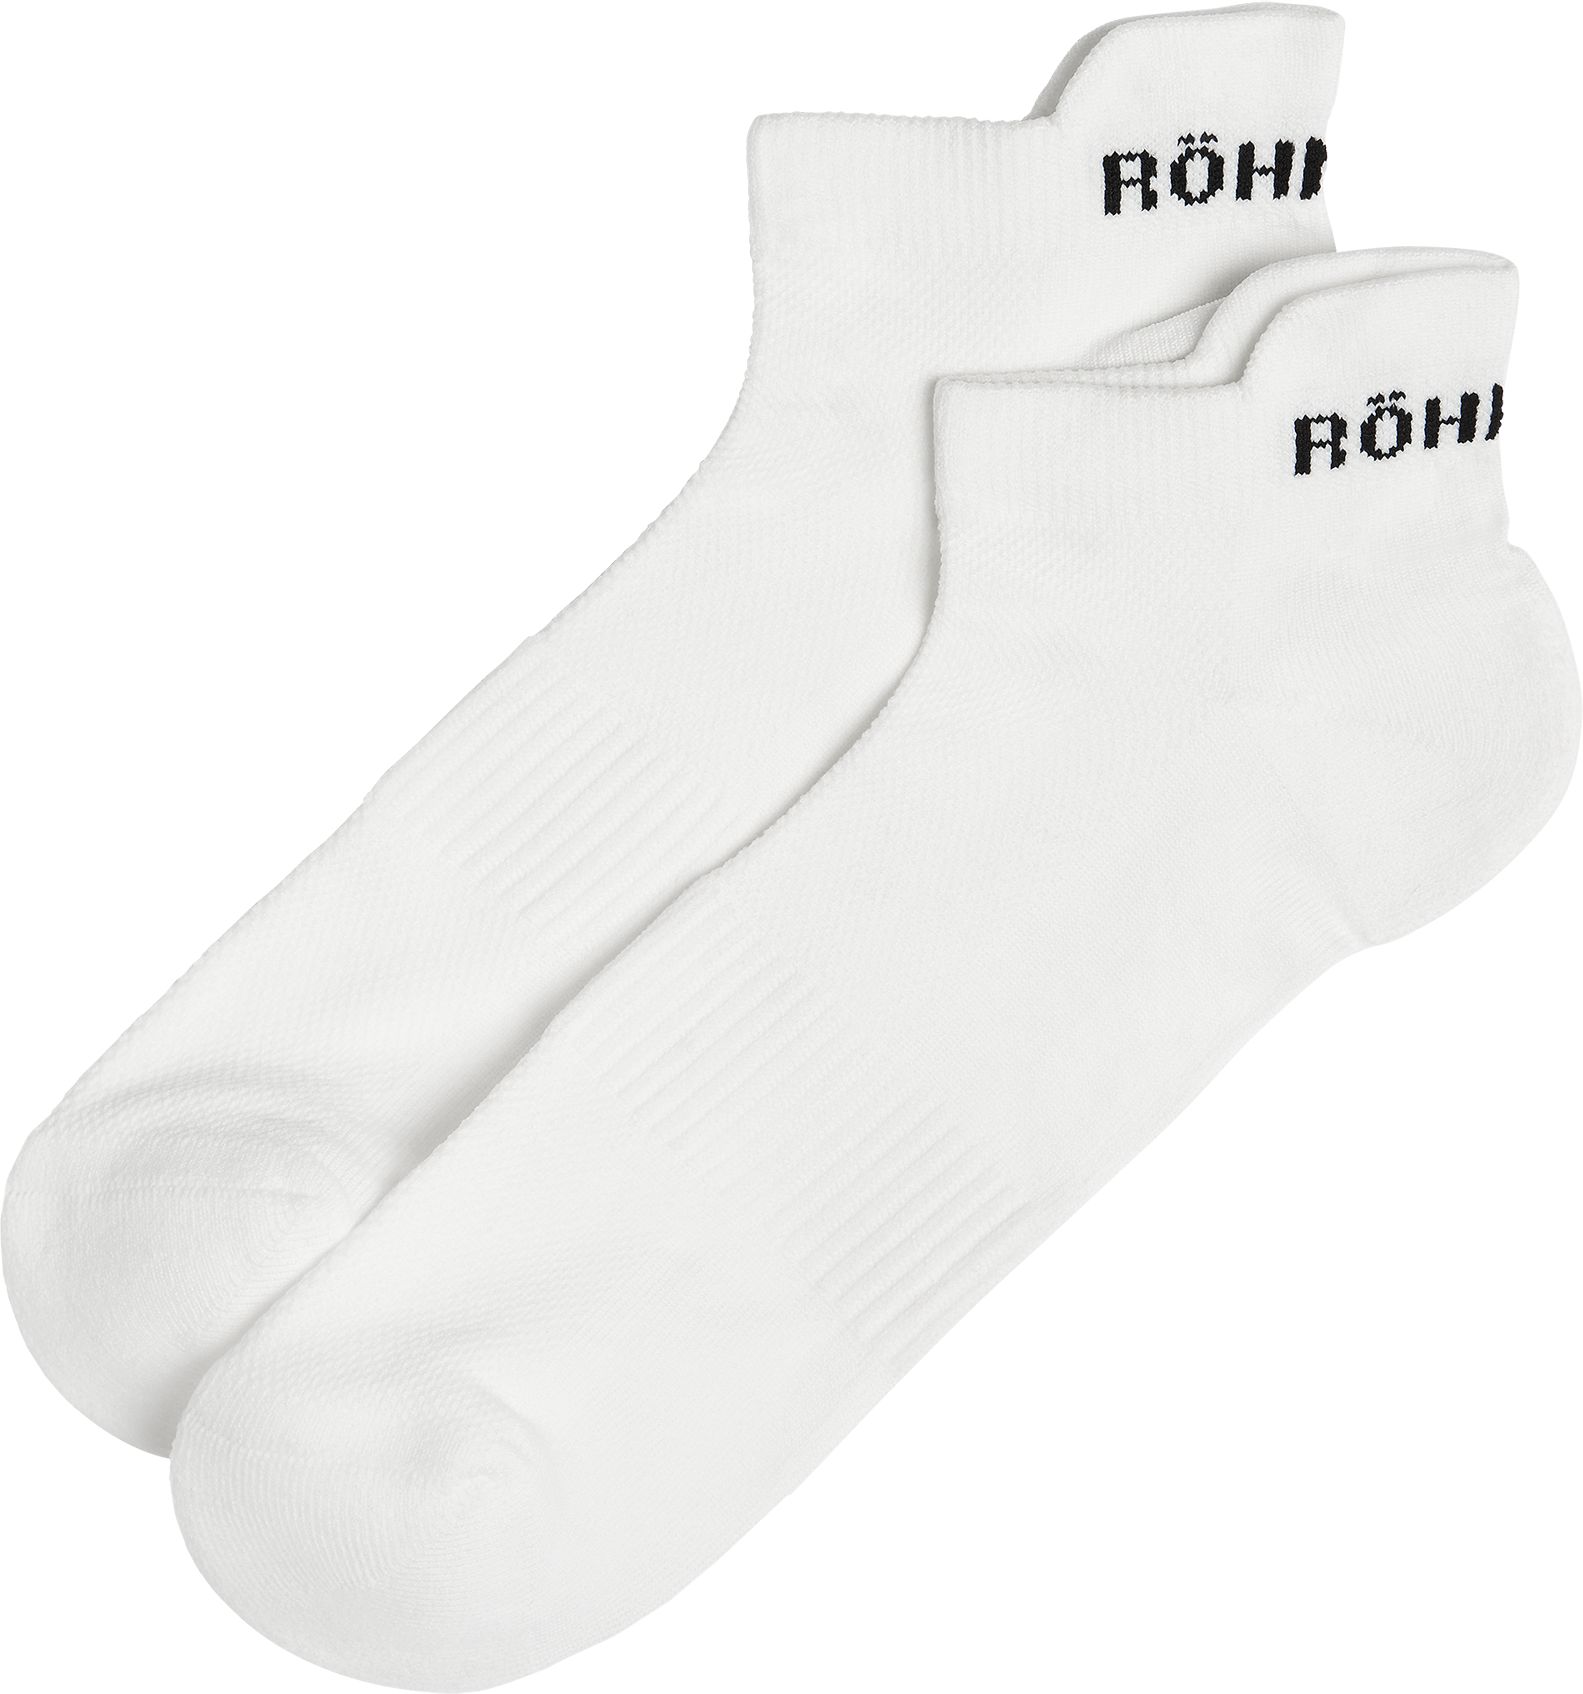 RÖHNISCH, 2-pack Functional Sport Socks